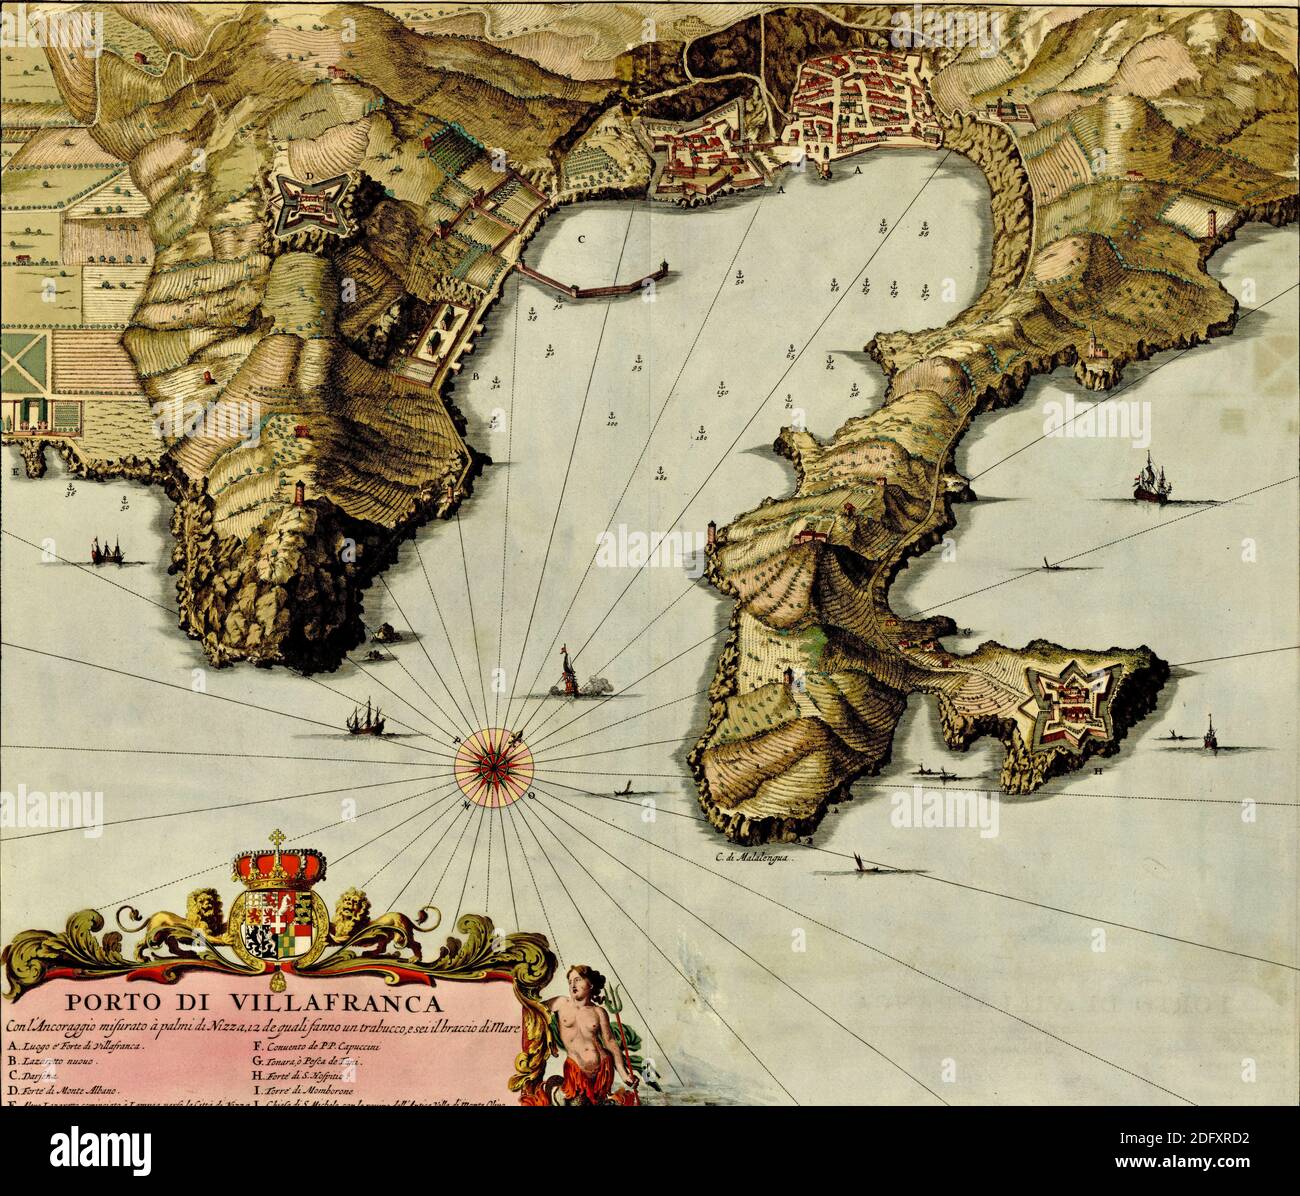 Antike Landkarte des Hafens von Villafranca aus dem Atlas der Befestigungsanlagen und Schlachten von Anna Beek und Gaspar Baillieu, ursprünglich im 17. Jahrhundert veröffentlicht Stockfoto